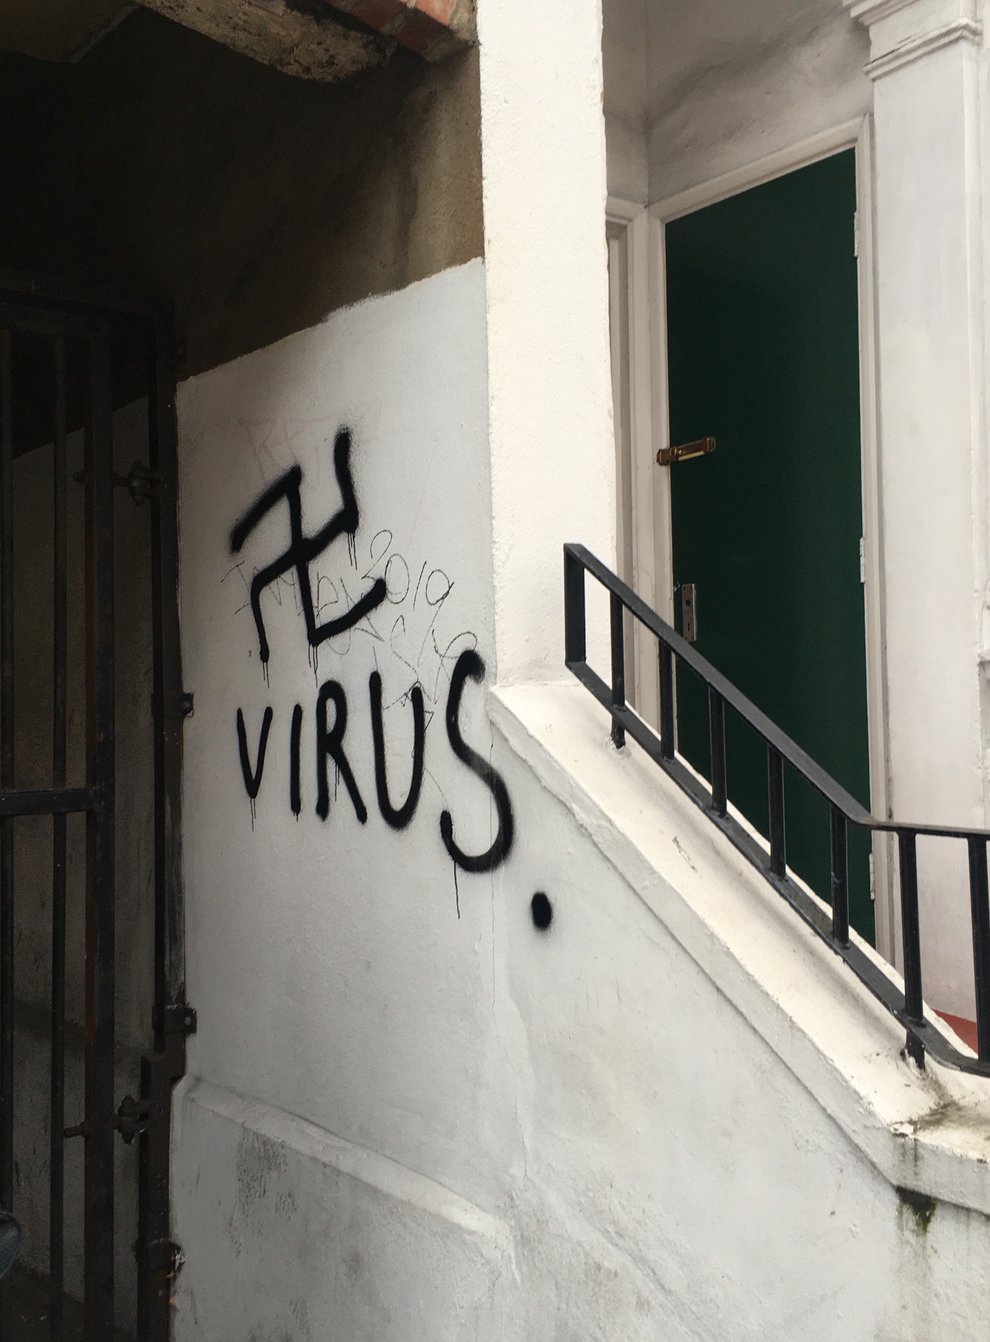 Anti-Semitic graffiti